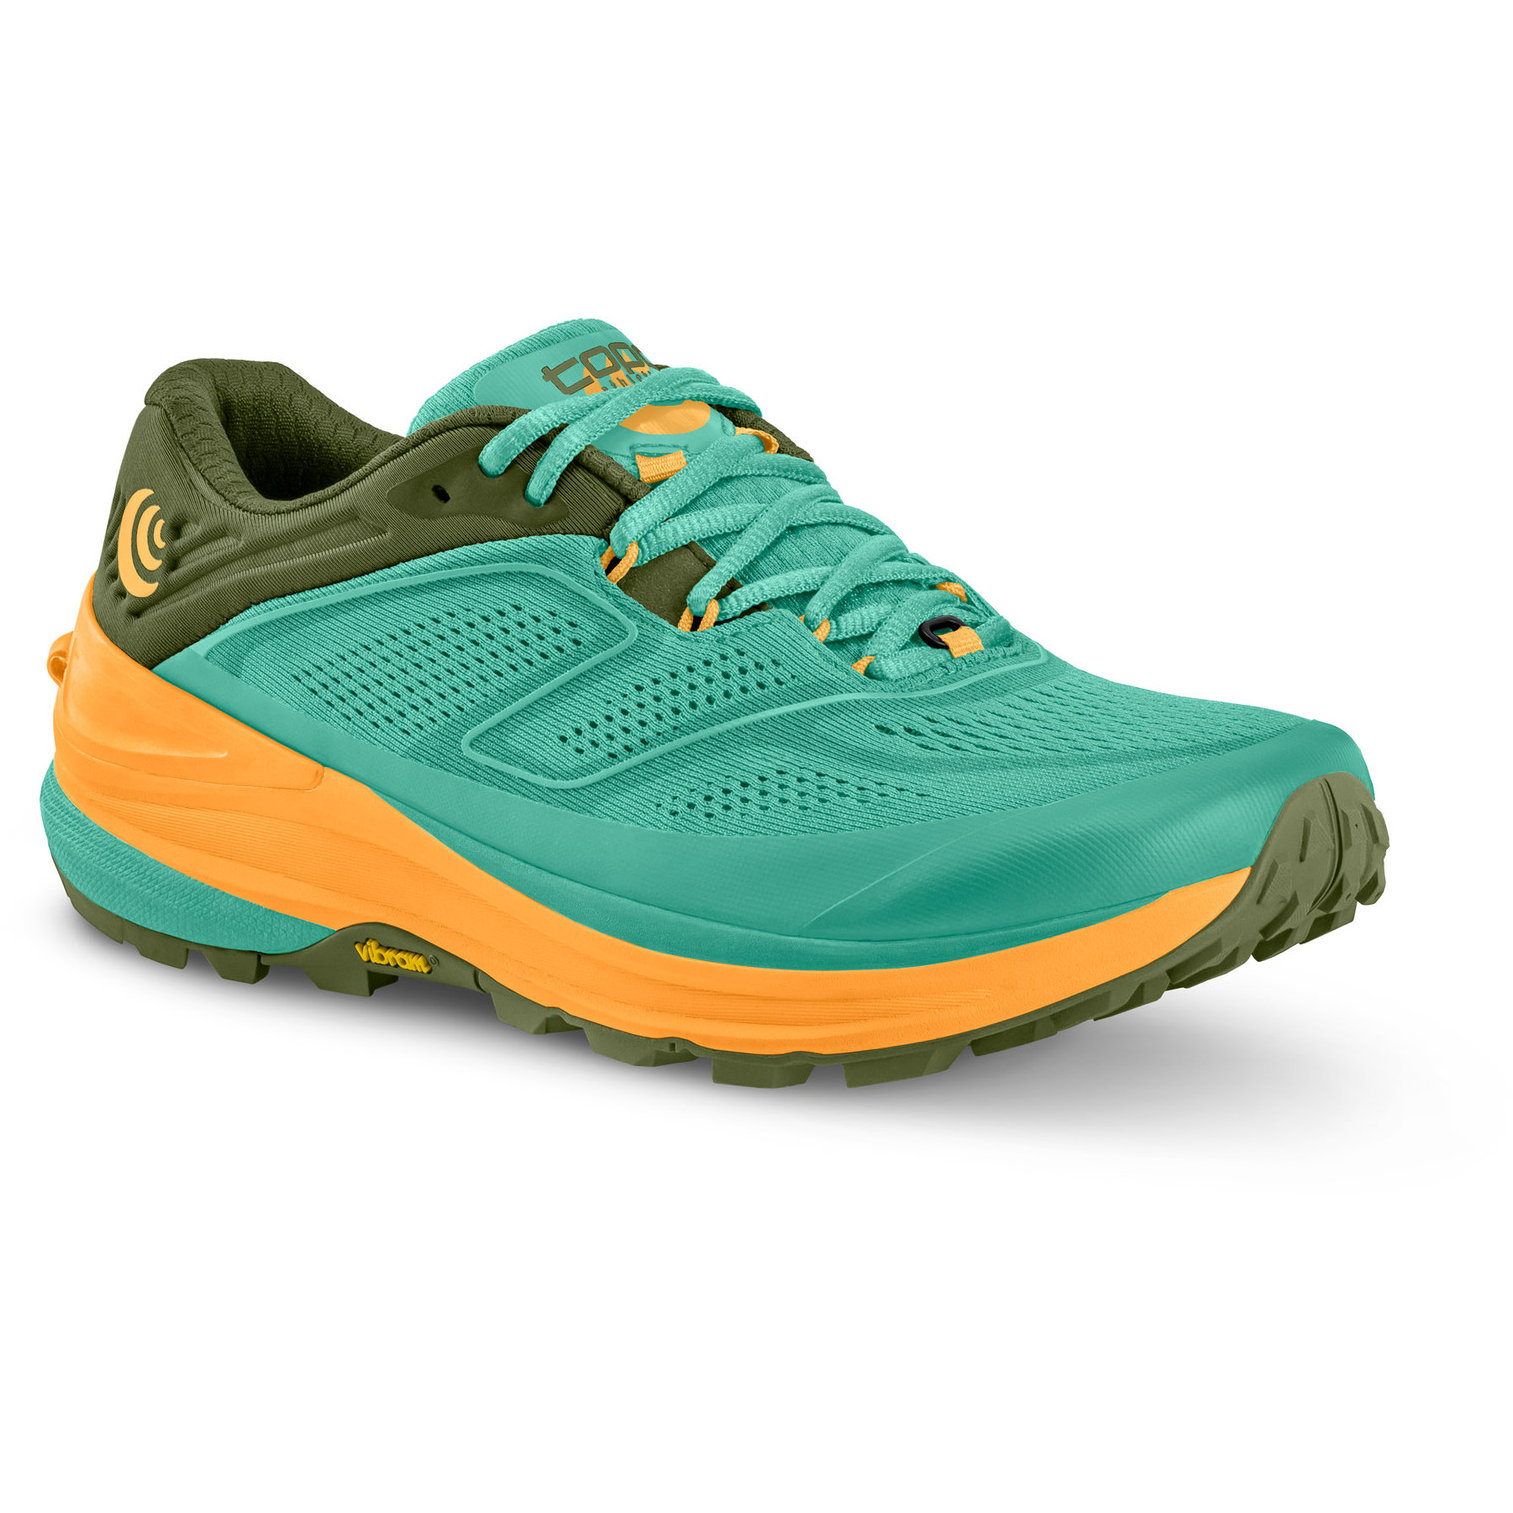 Produktbild von Topo Athletic Ultraventure 2 Damen Trail Laufschuhe - turquoise/gold